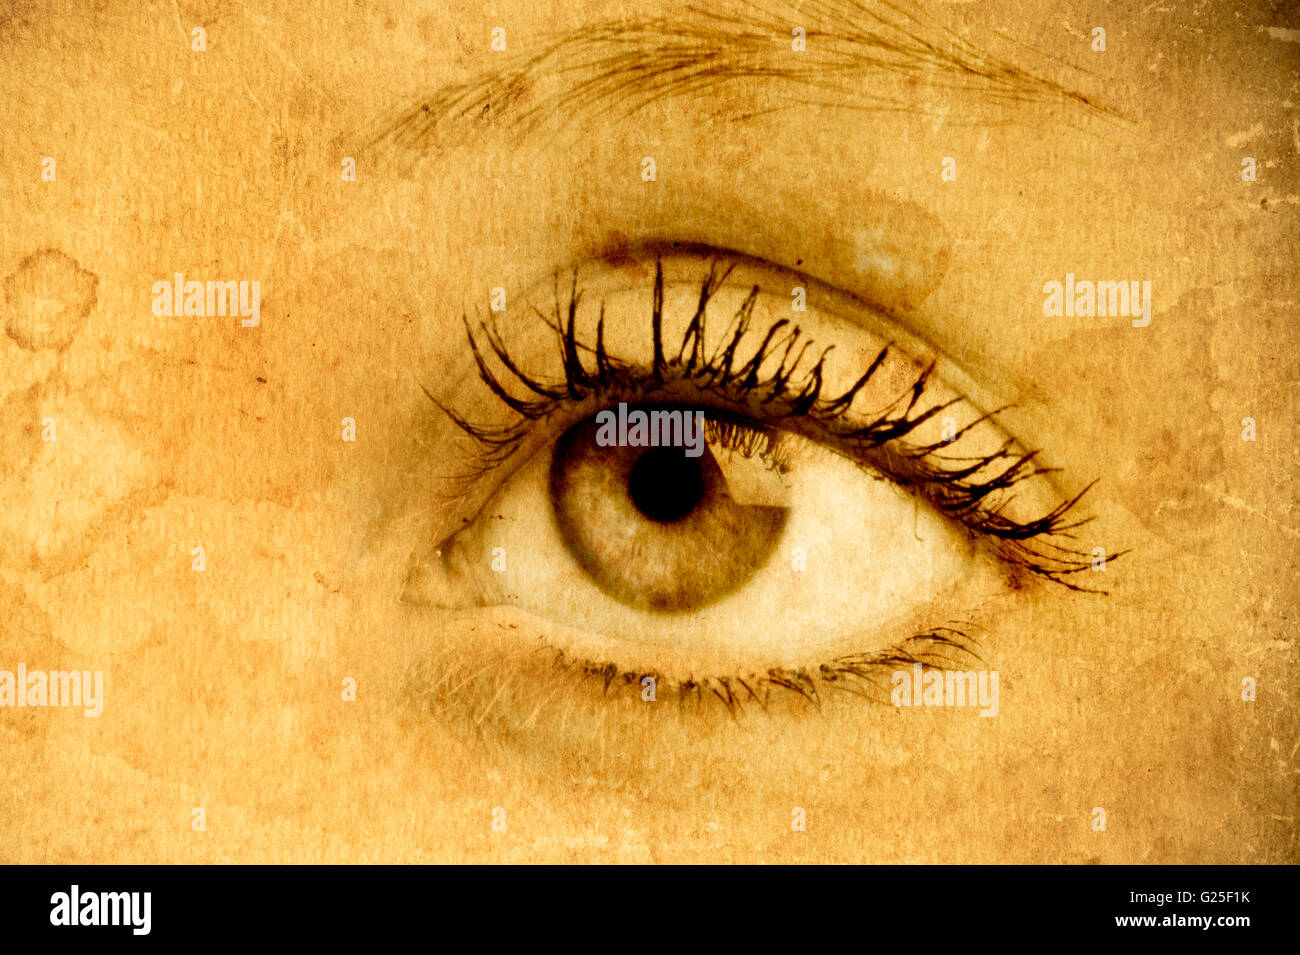 Frau Auge mit Grunge-Effekt Stockfoto